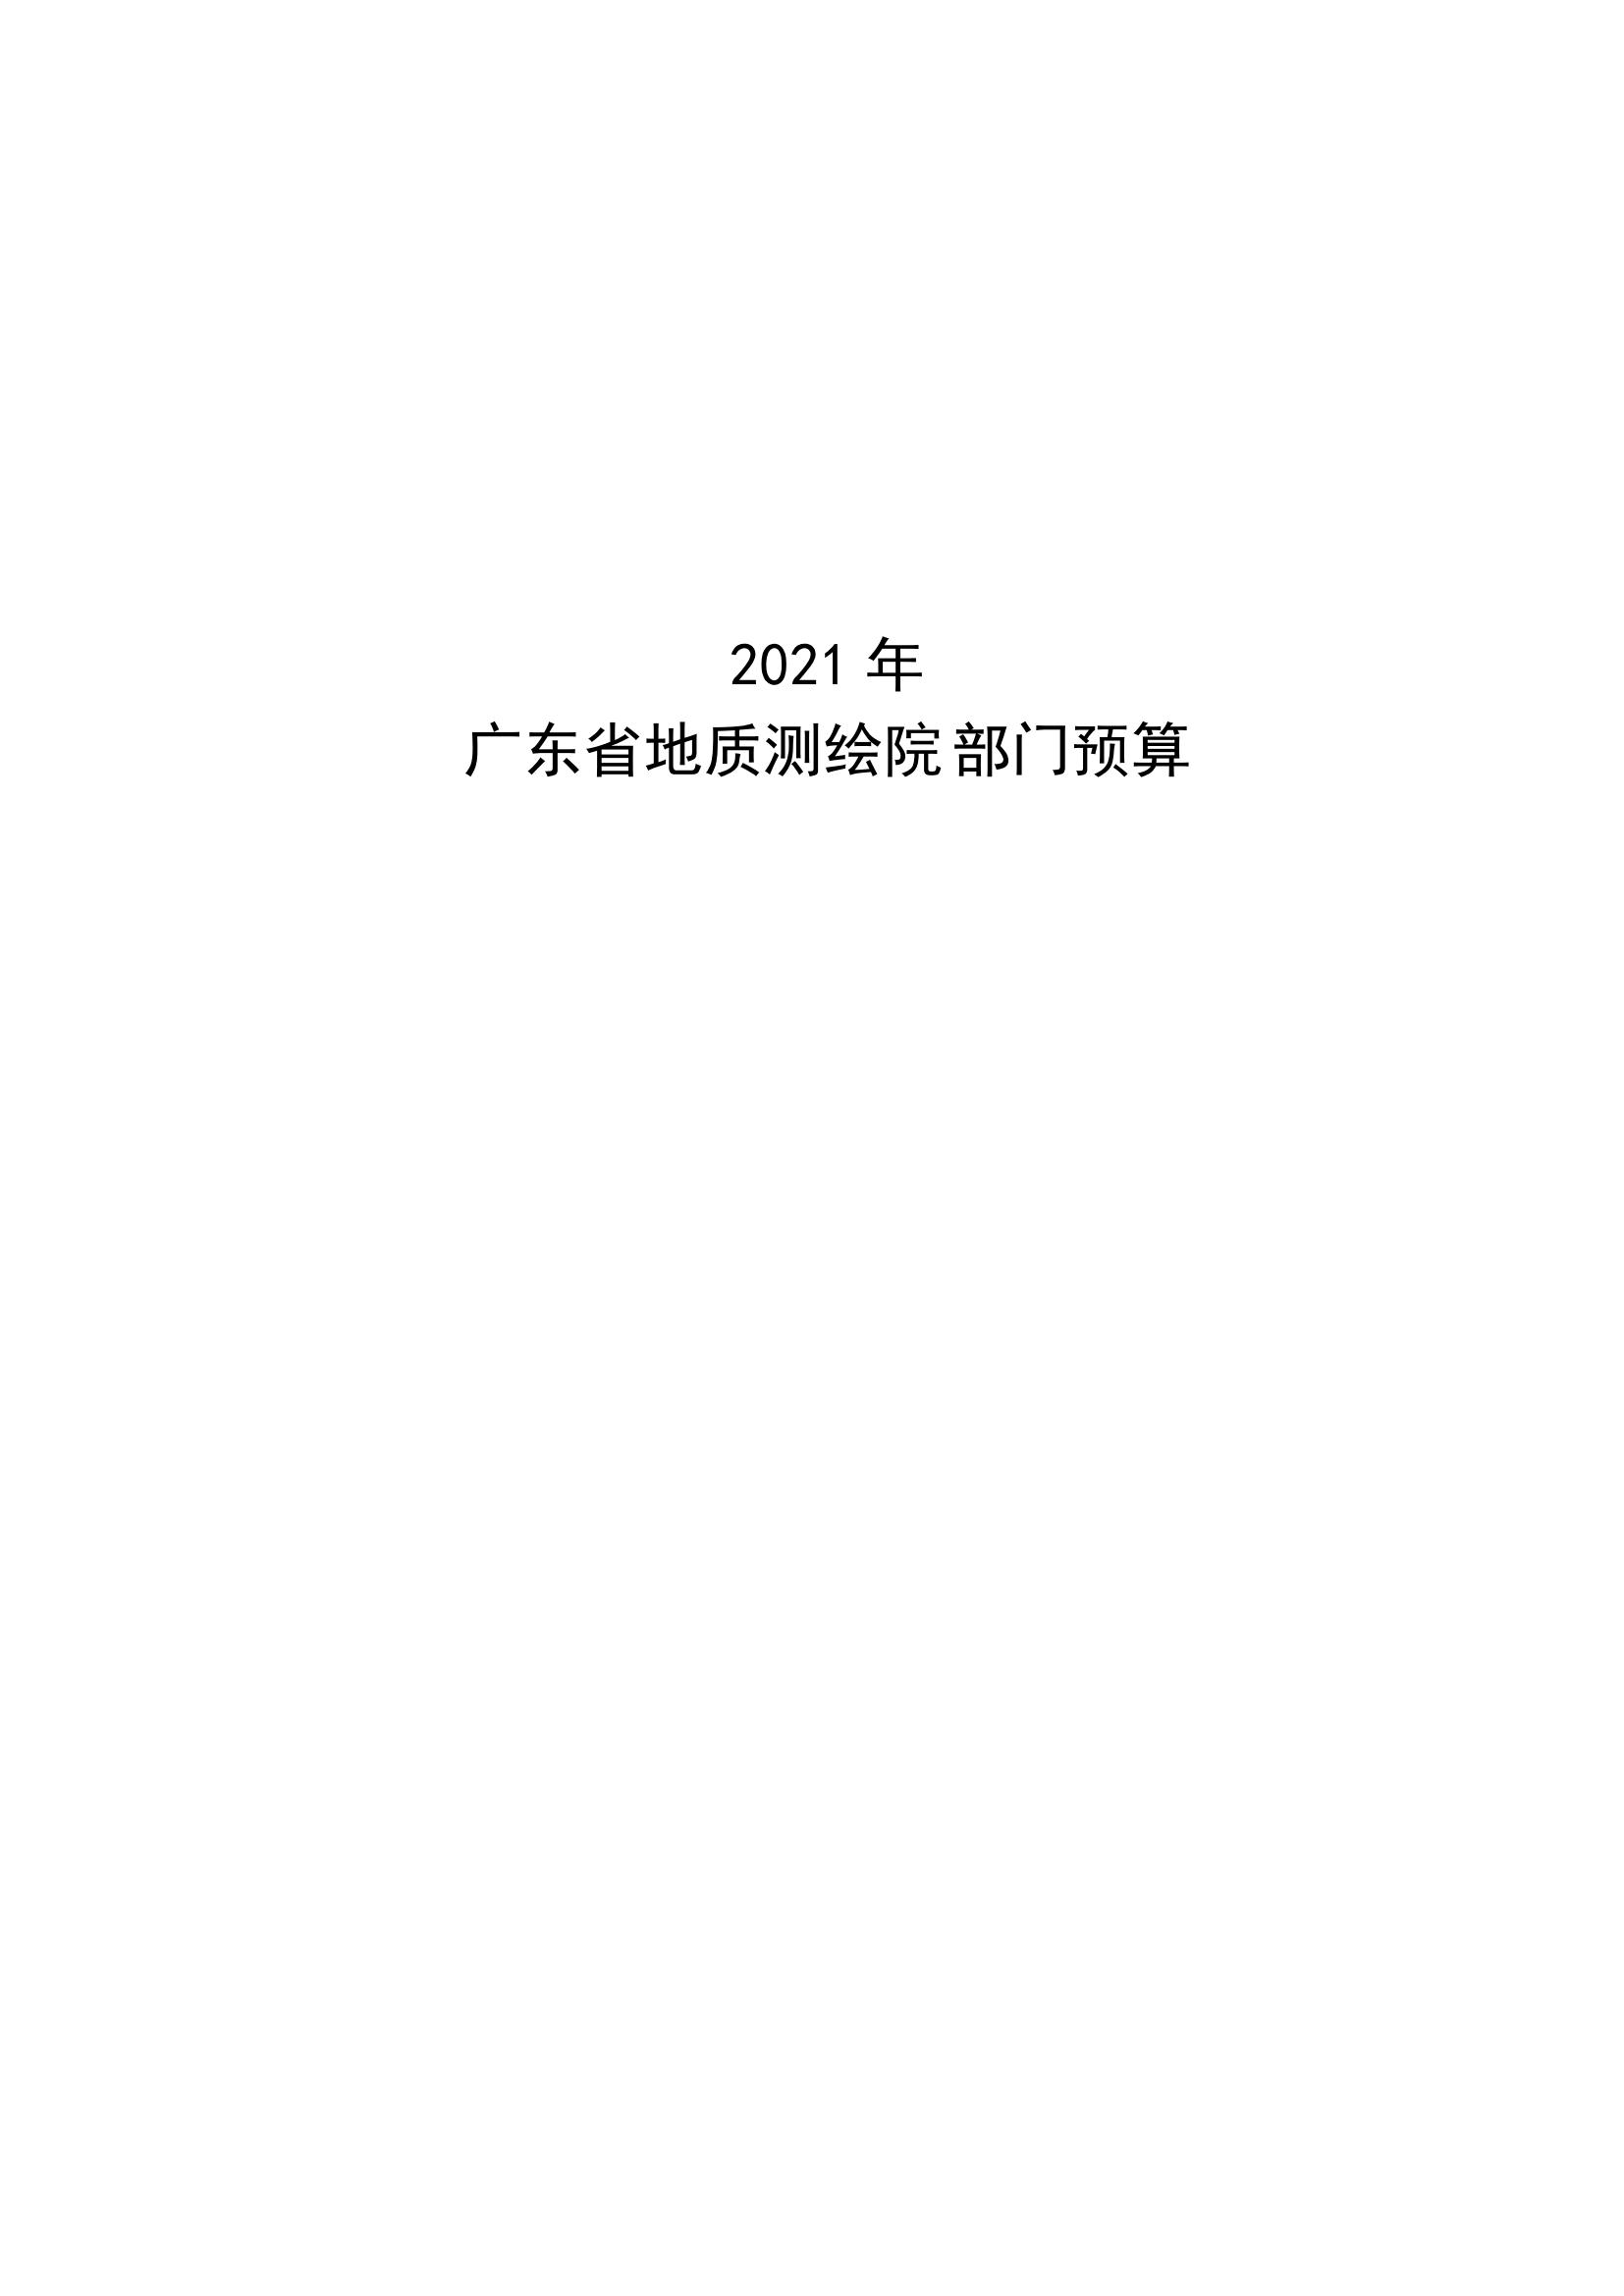 2021年广东省地质测绘院部门预算公开_00.jpg